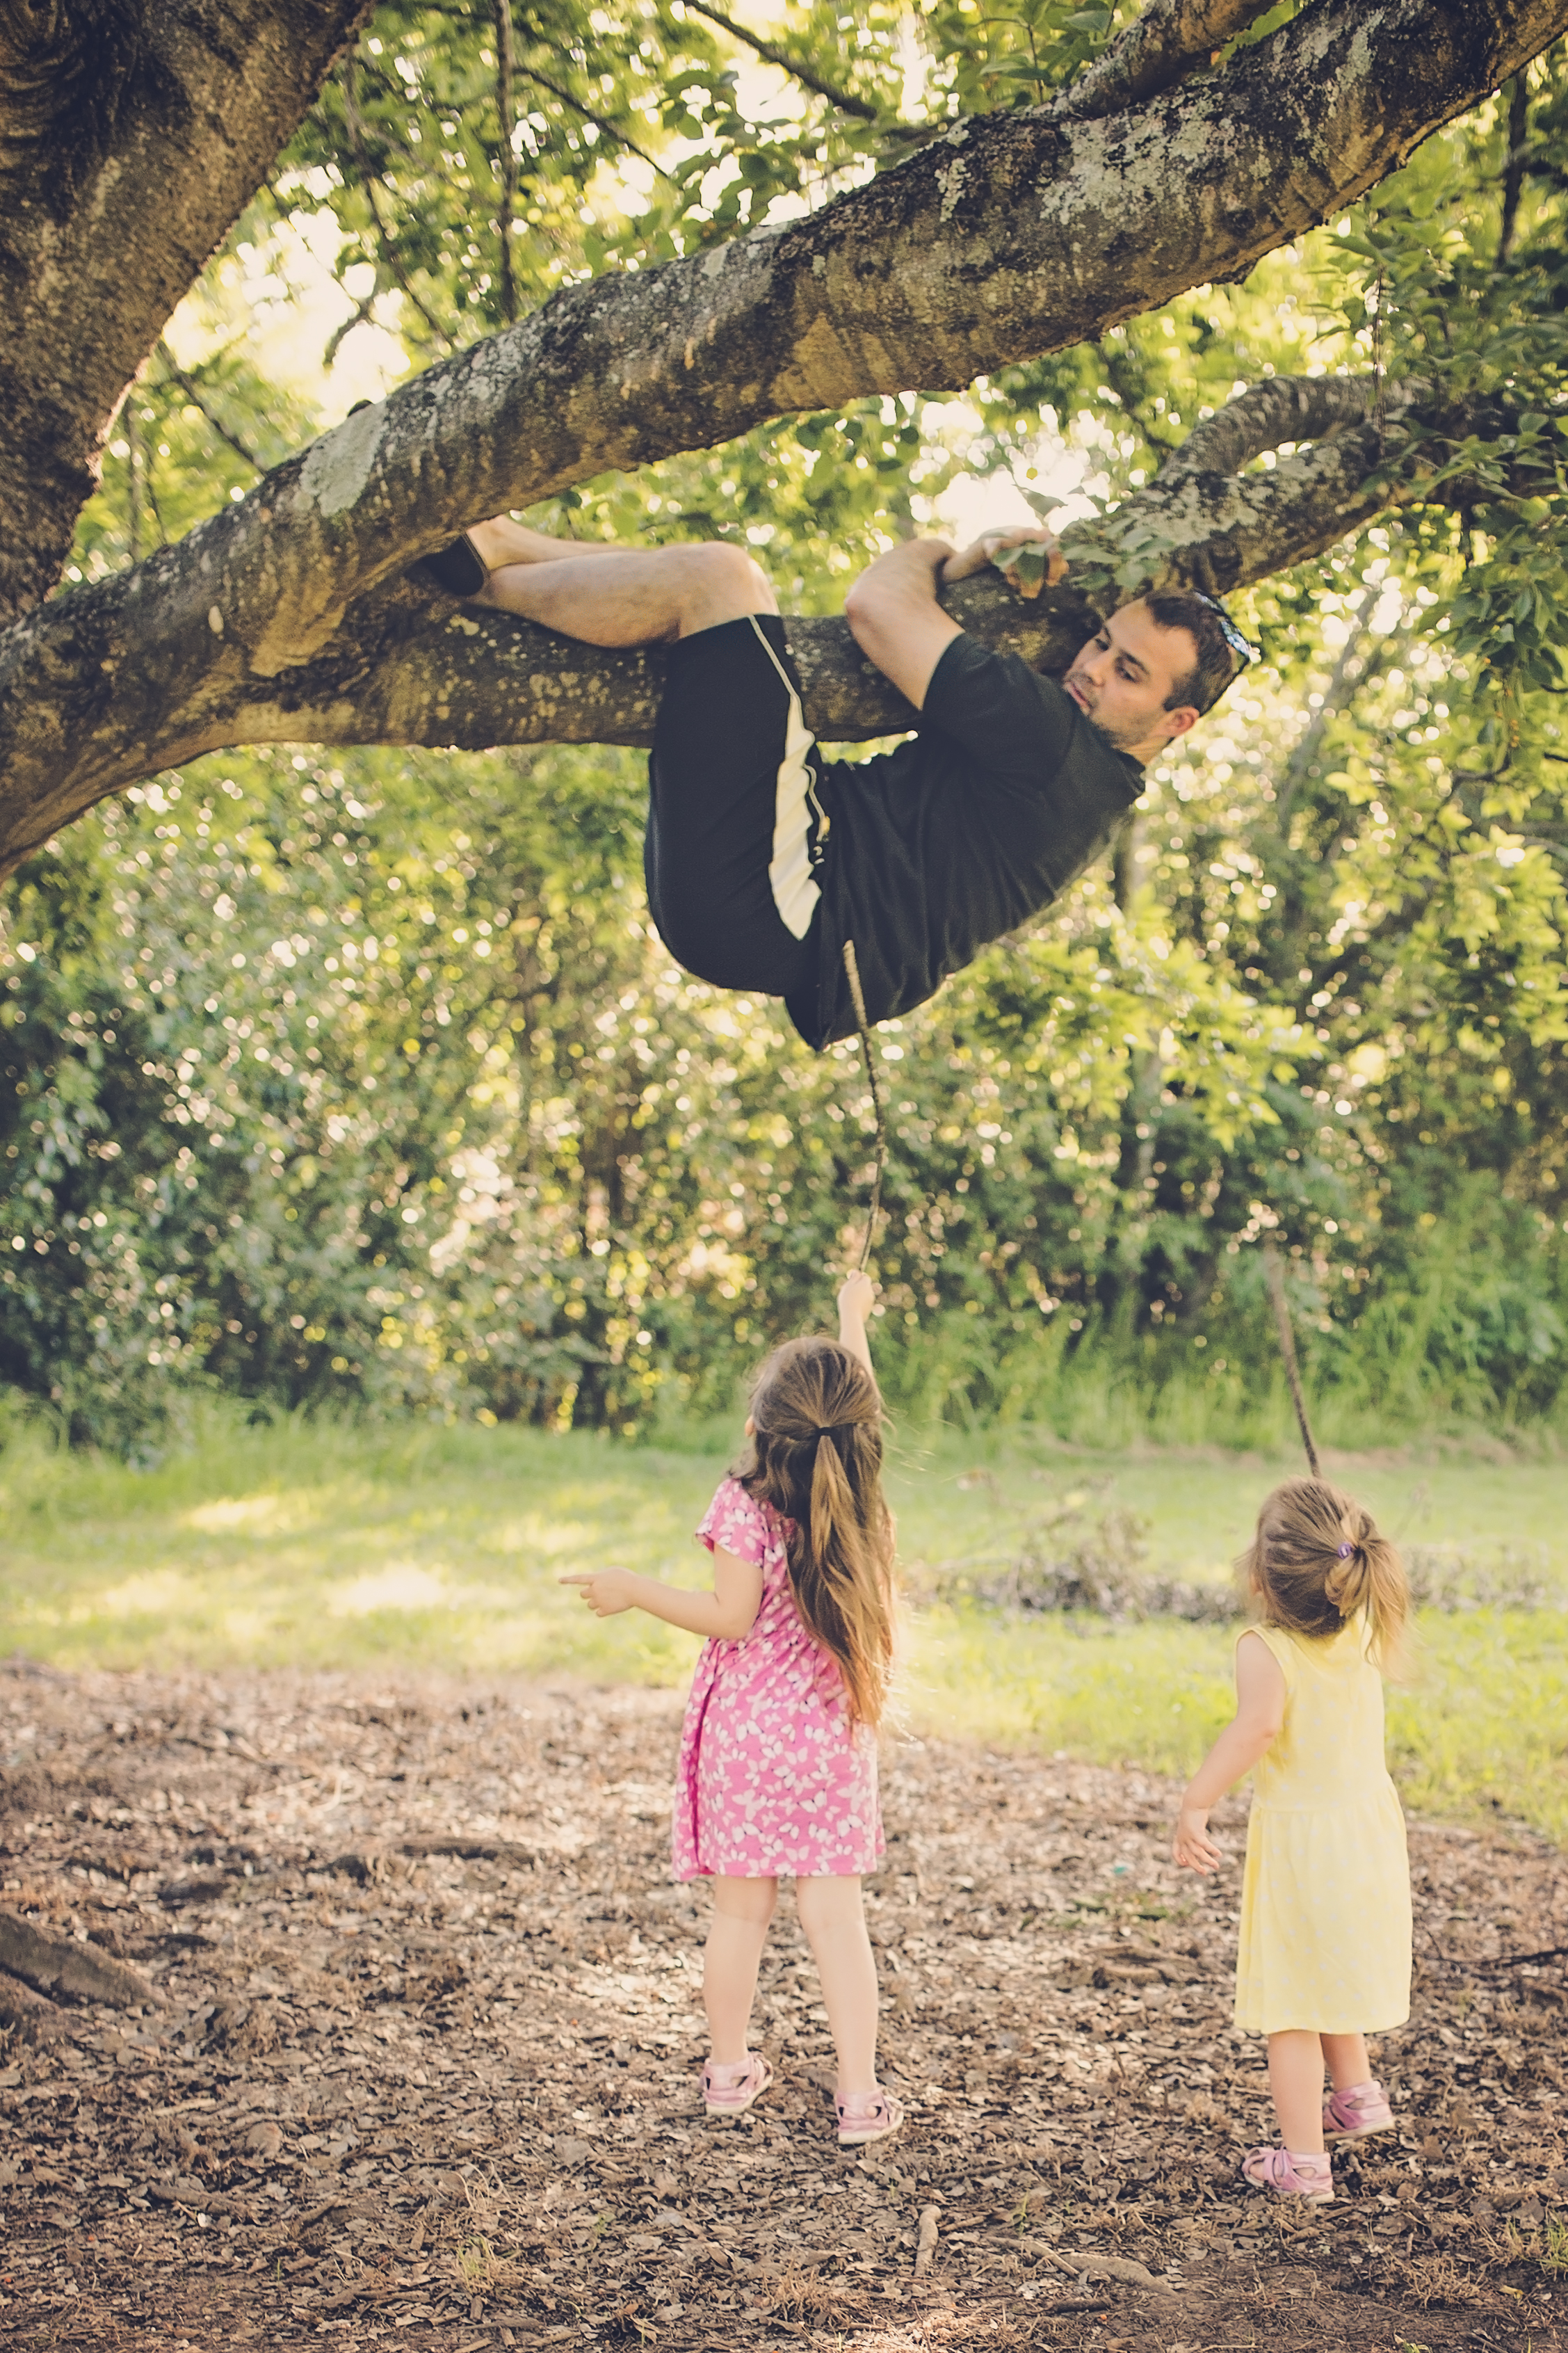 Teach them how to climb a tree